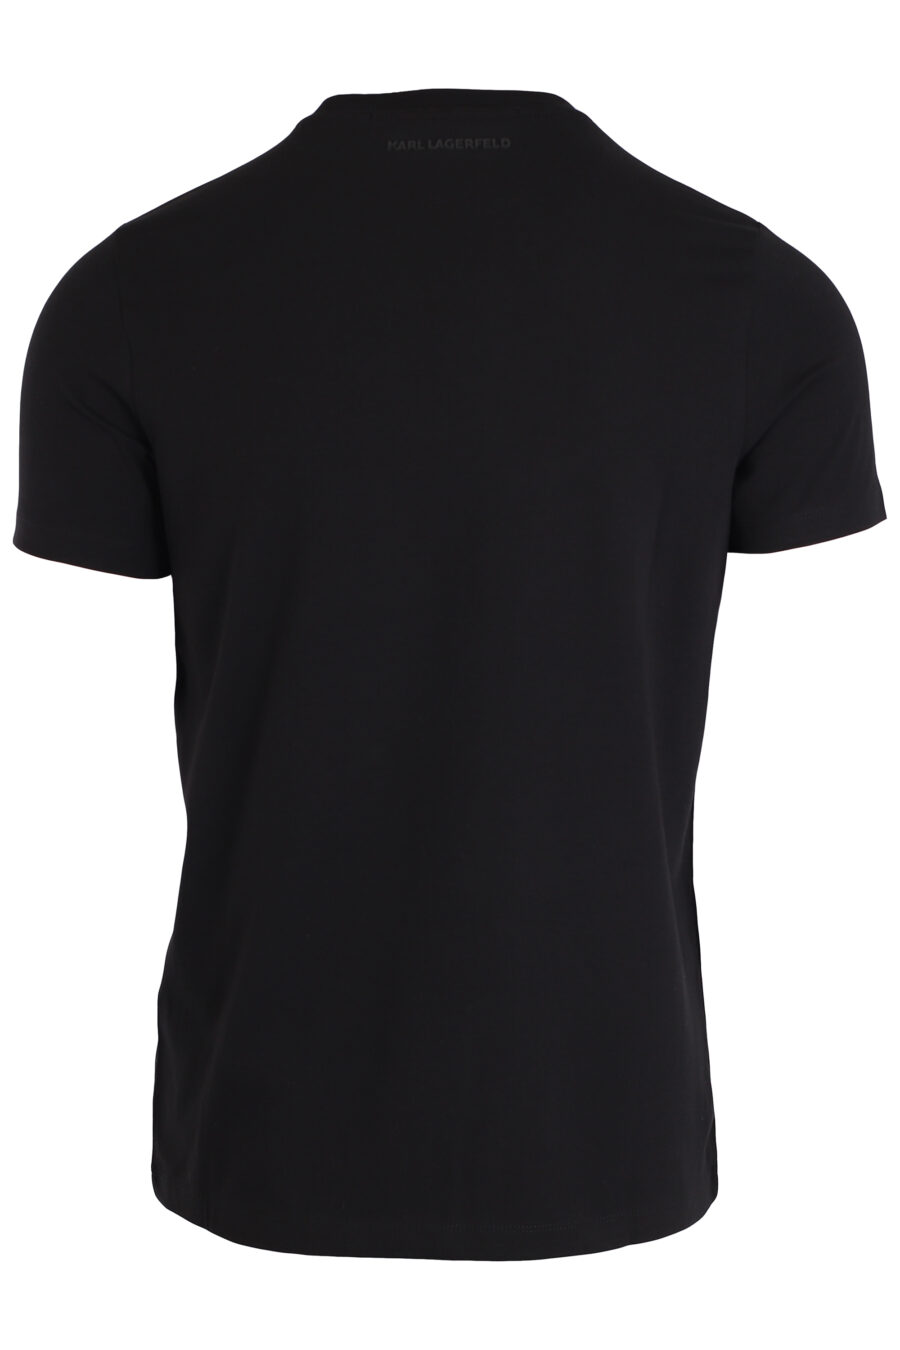 T-shirt schwarz mit Logo "ikonik" - IMG 3977